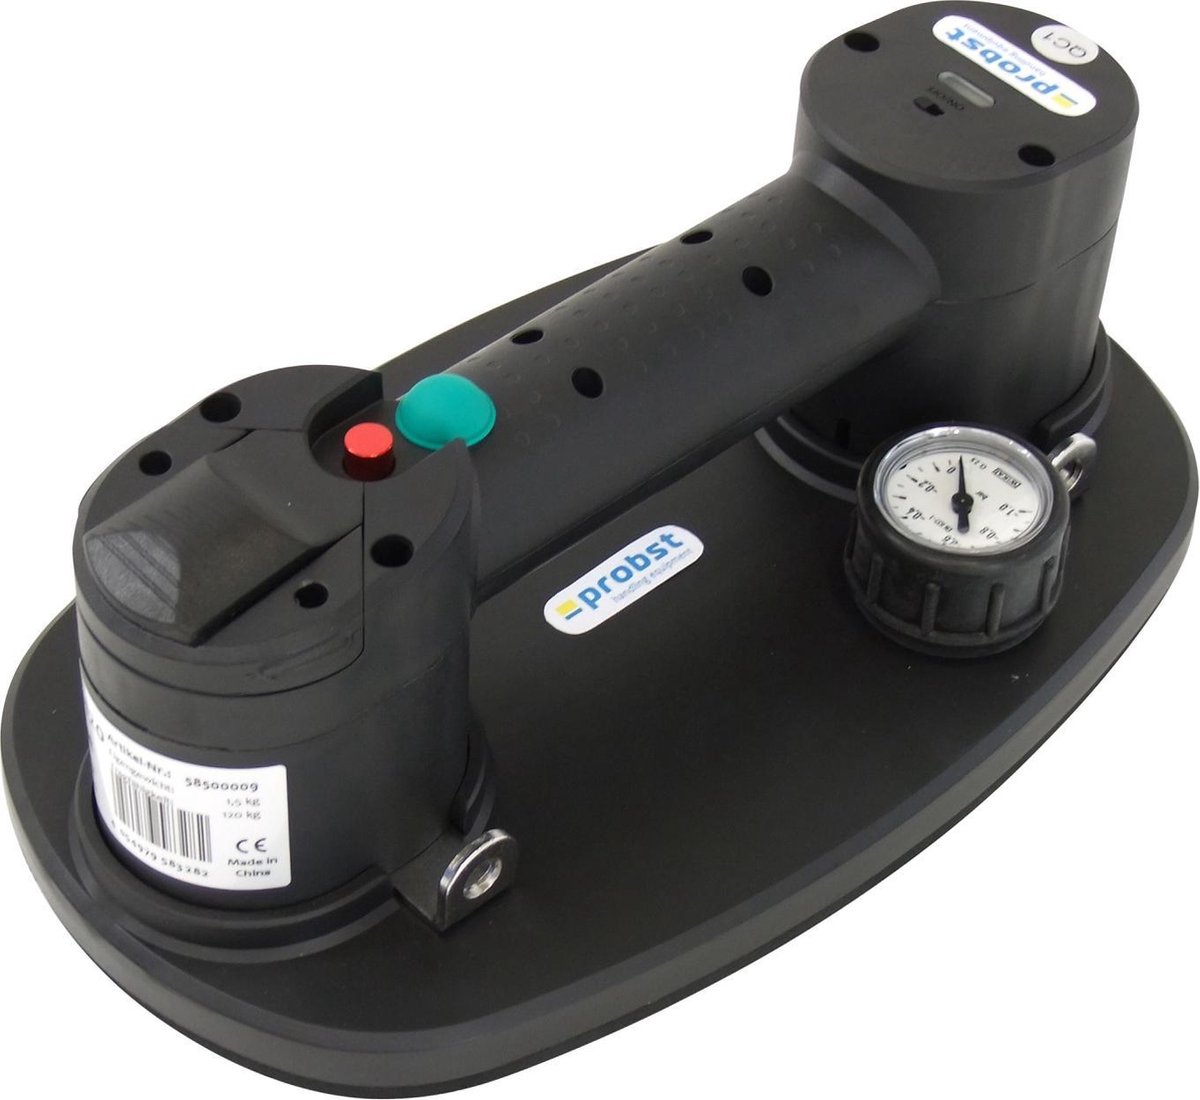 PROBST FXAH-120 accu vacuum tegeltiller in koffer | bol.com